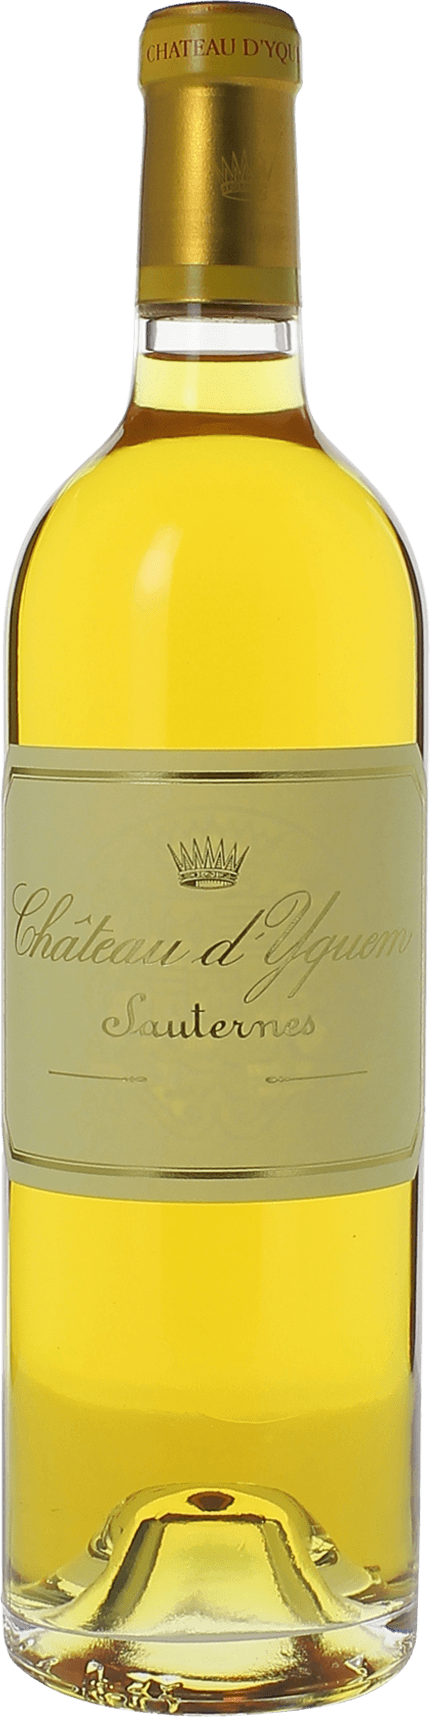 Yquem 1985 1er Grand cru class Sauternes, Bordeaux blanc